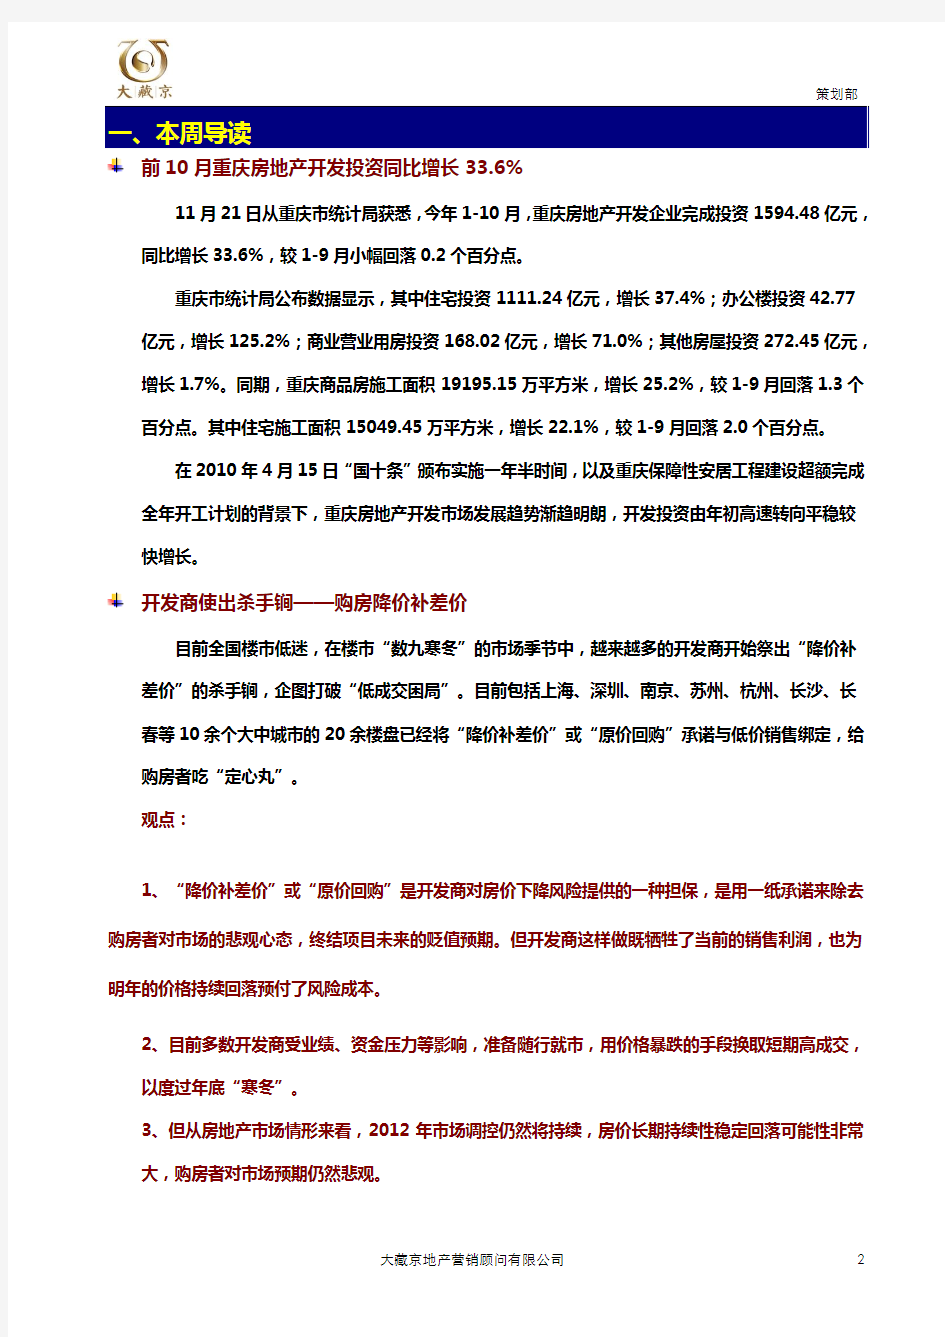 重庆主城房地产市场动态(11.21-11.27)